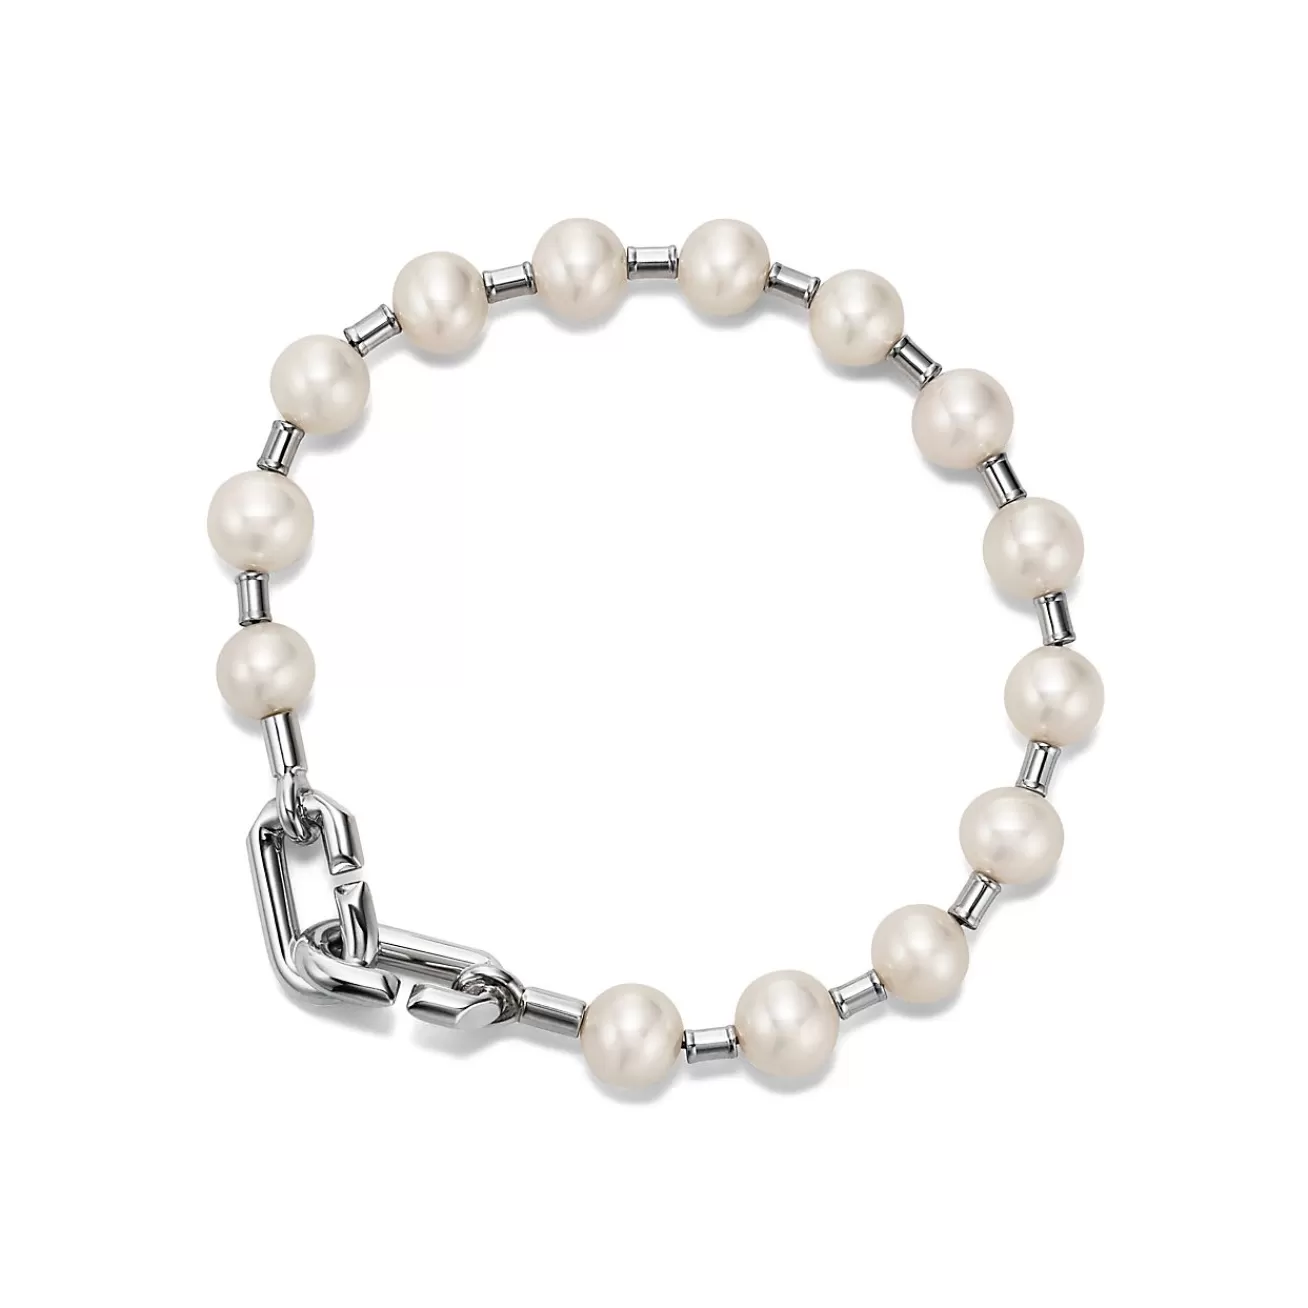 Tiffany & Co. Tiffany HardWear Pearl Bracelet in Silver, 7-8 mm | ^ Bracelets | Men's Jewelry